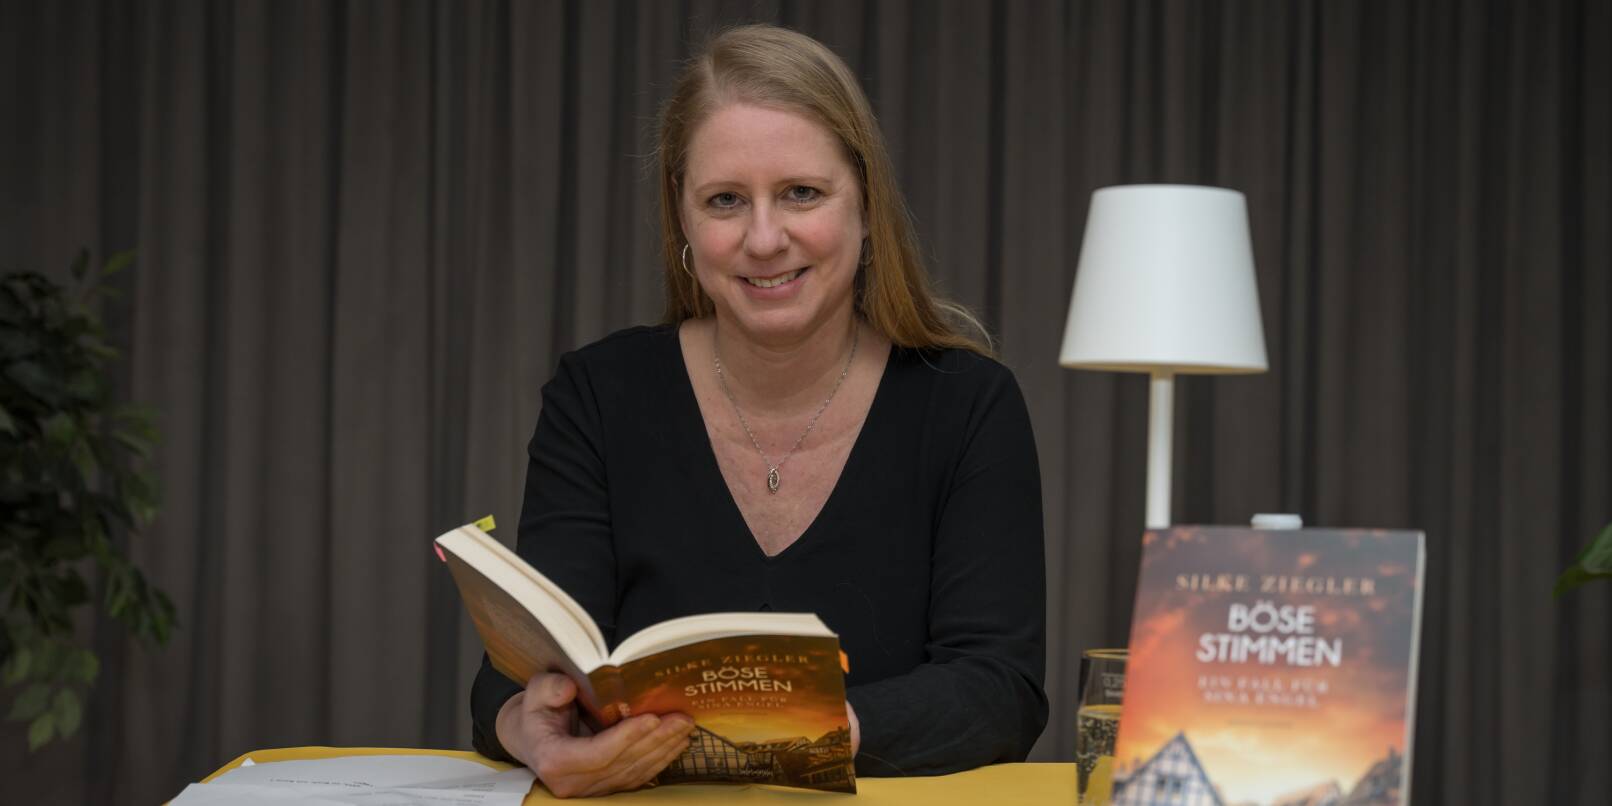 Silke Ziegler hat bereits 16 Bücher veröffentlicht.